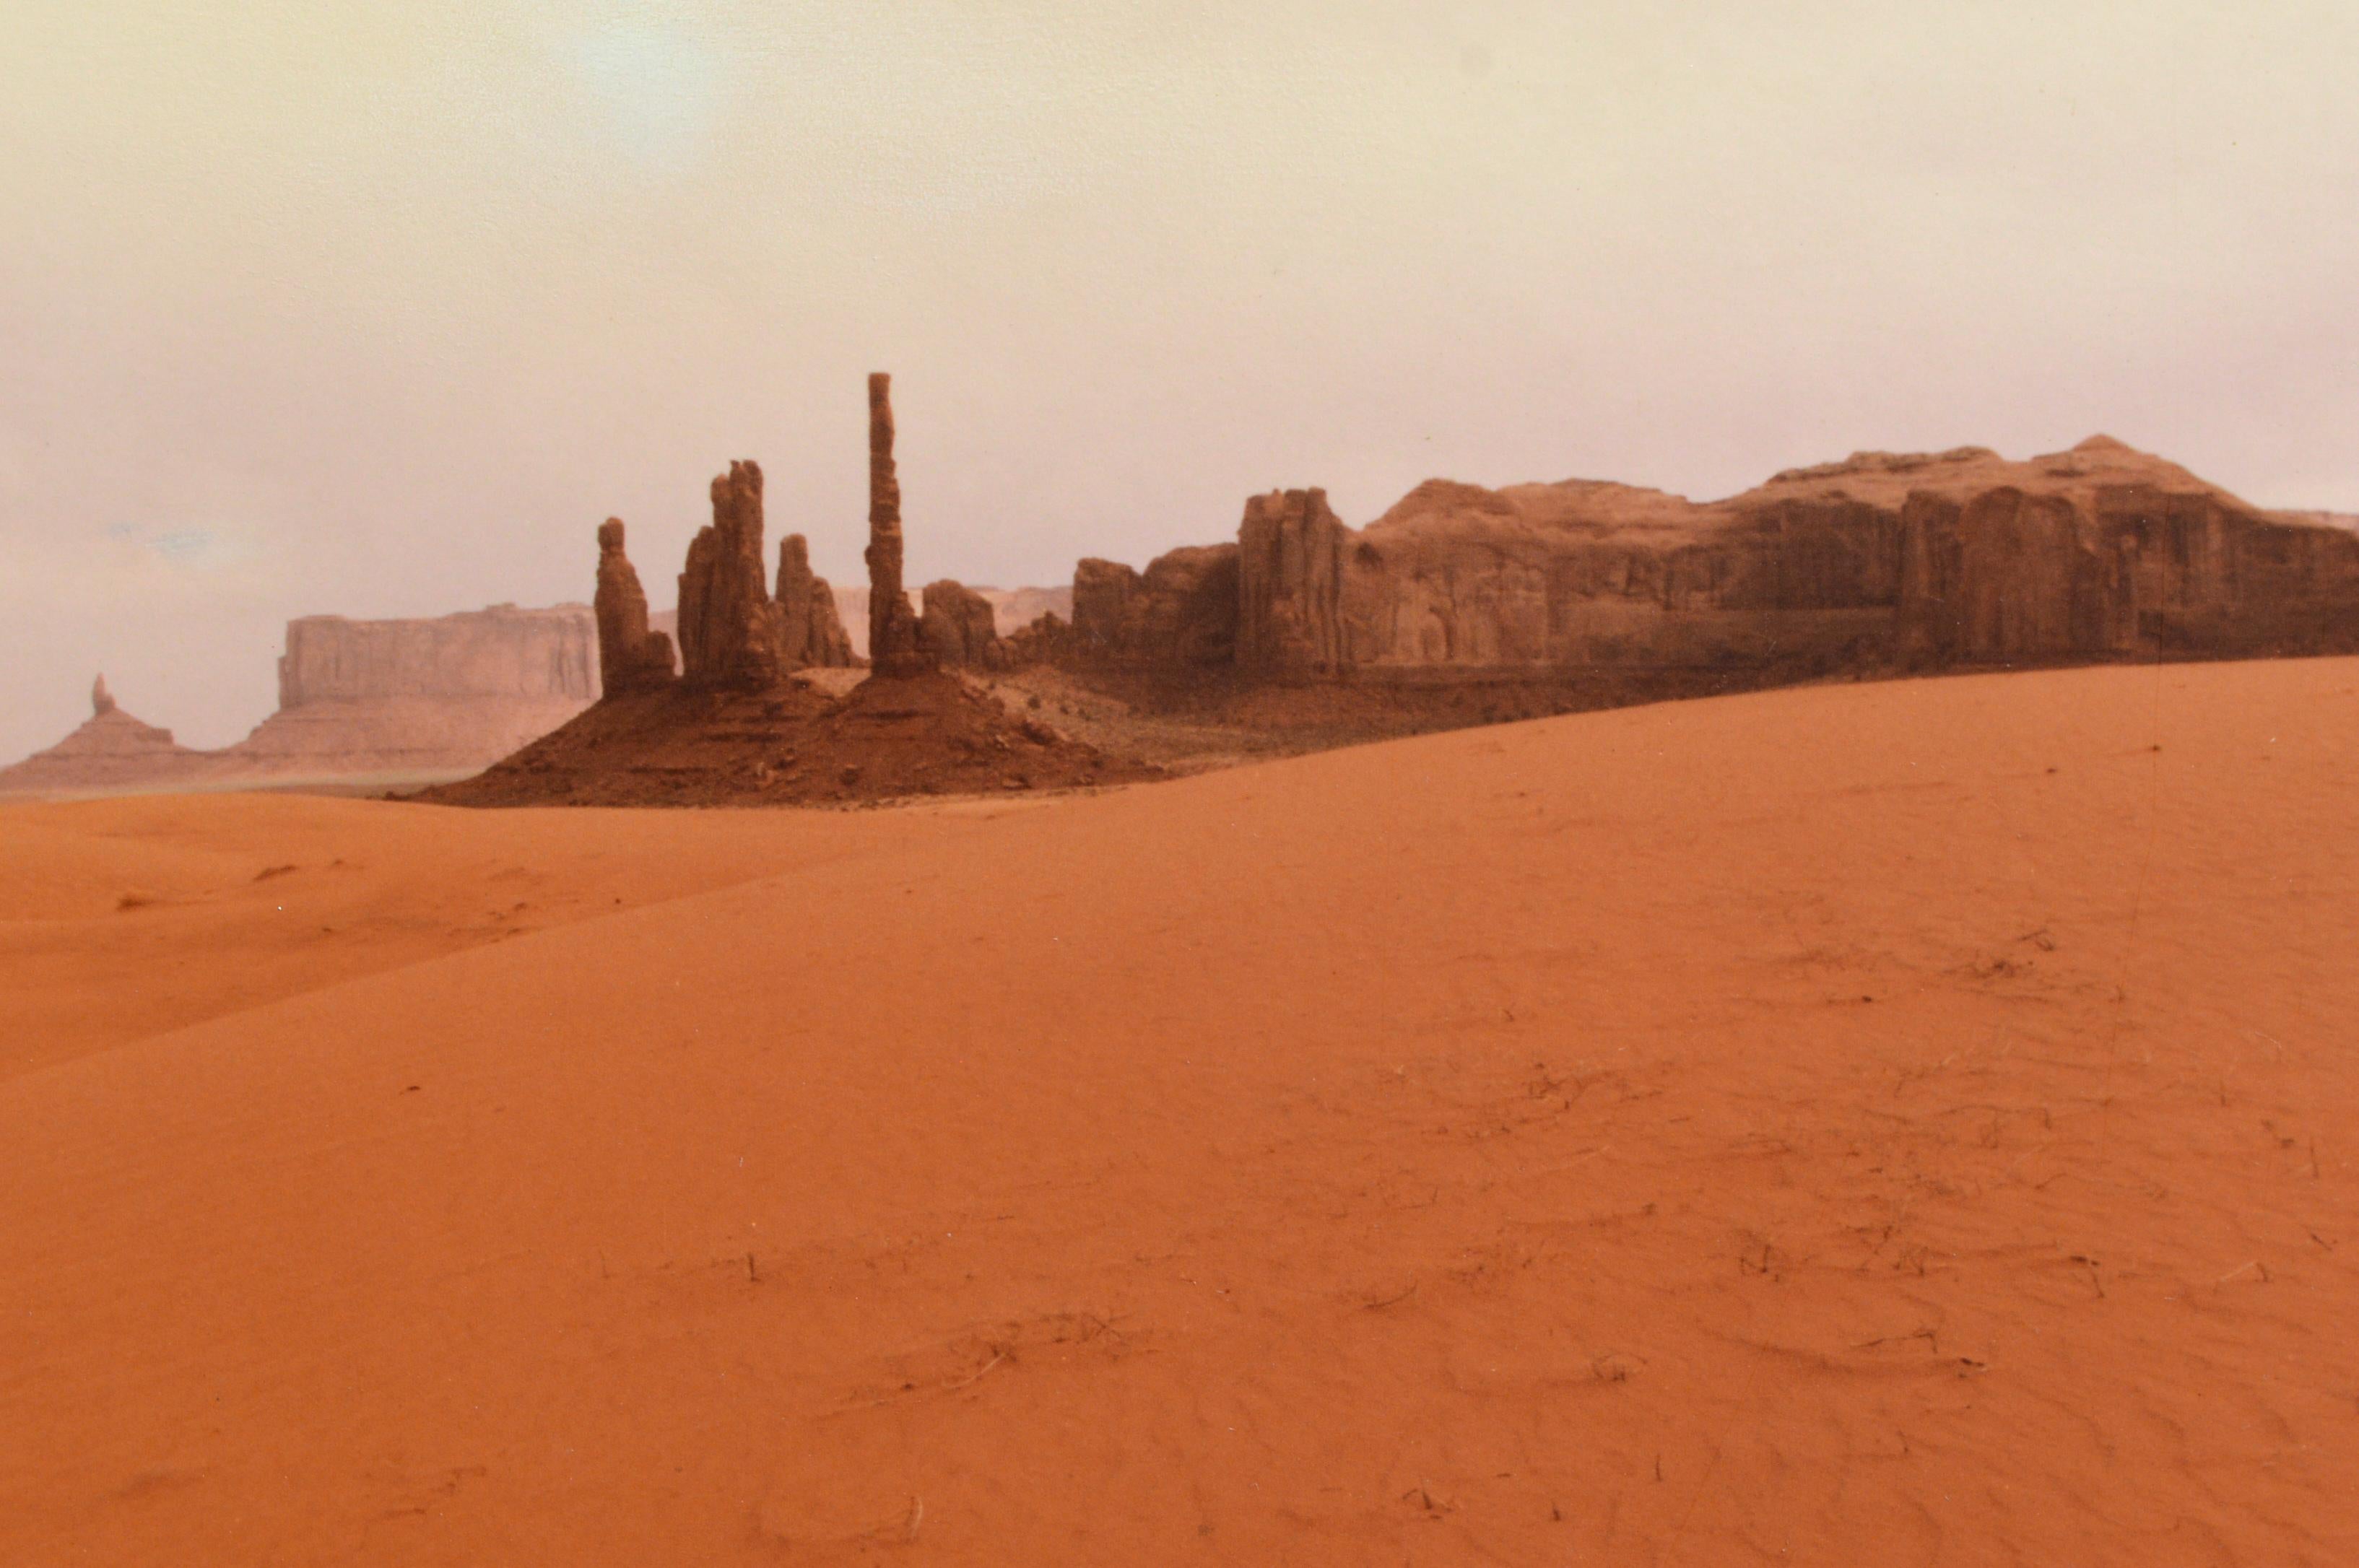 Photographie de paysage de Monument Valley réalisée par un artiste inconnu. Signé 